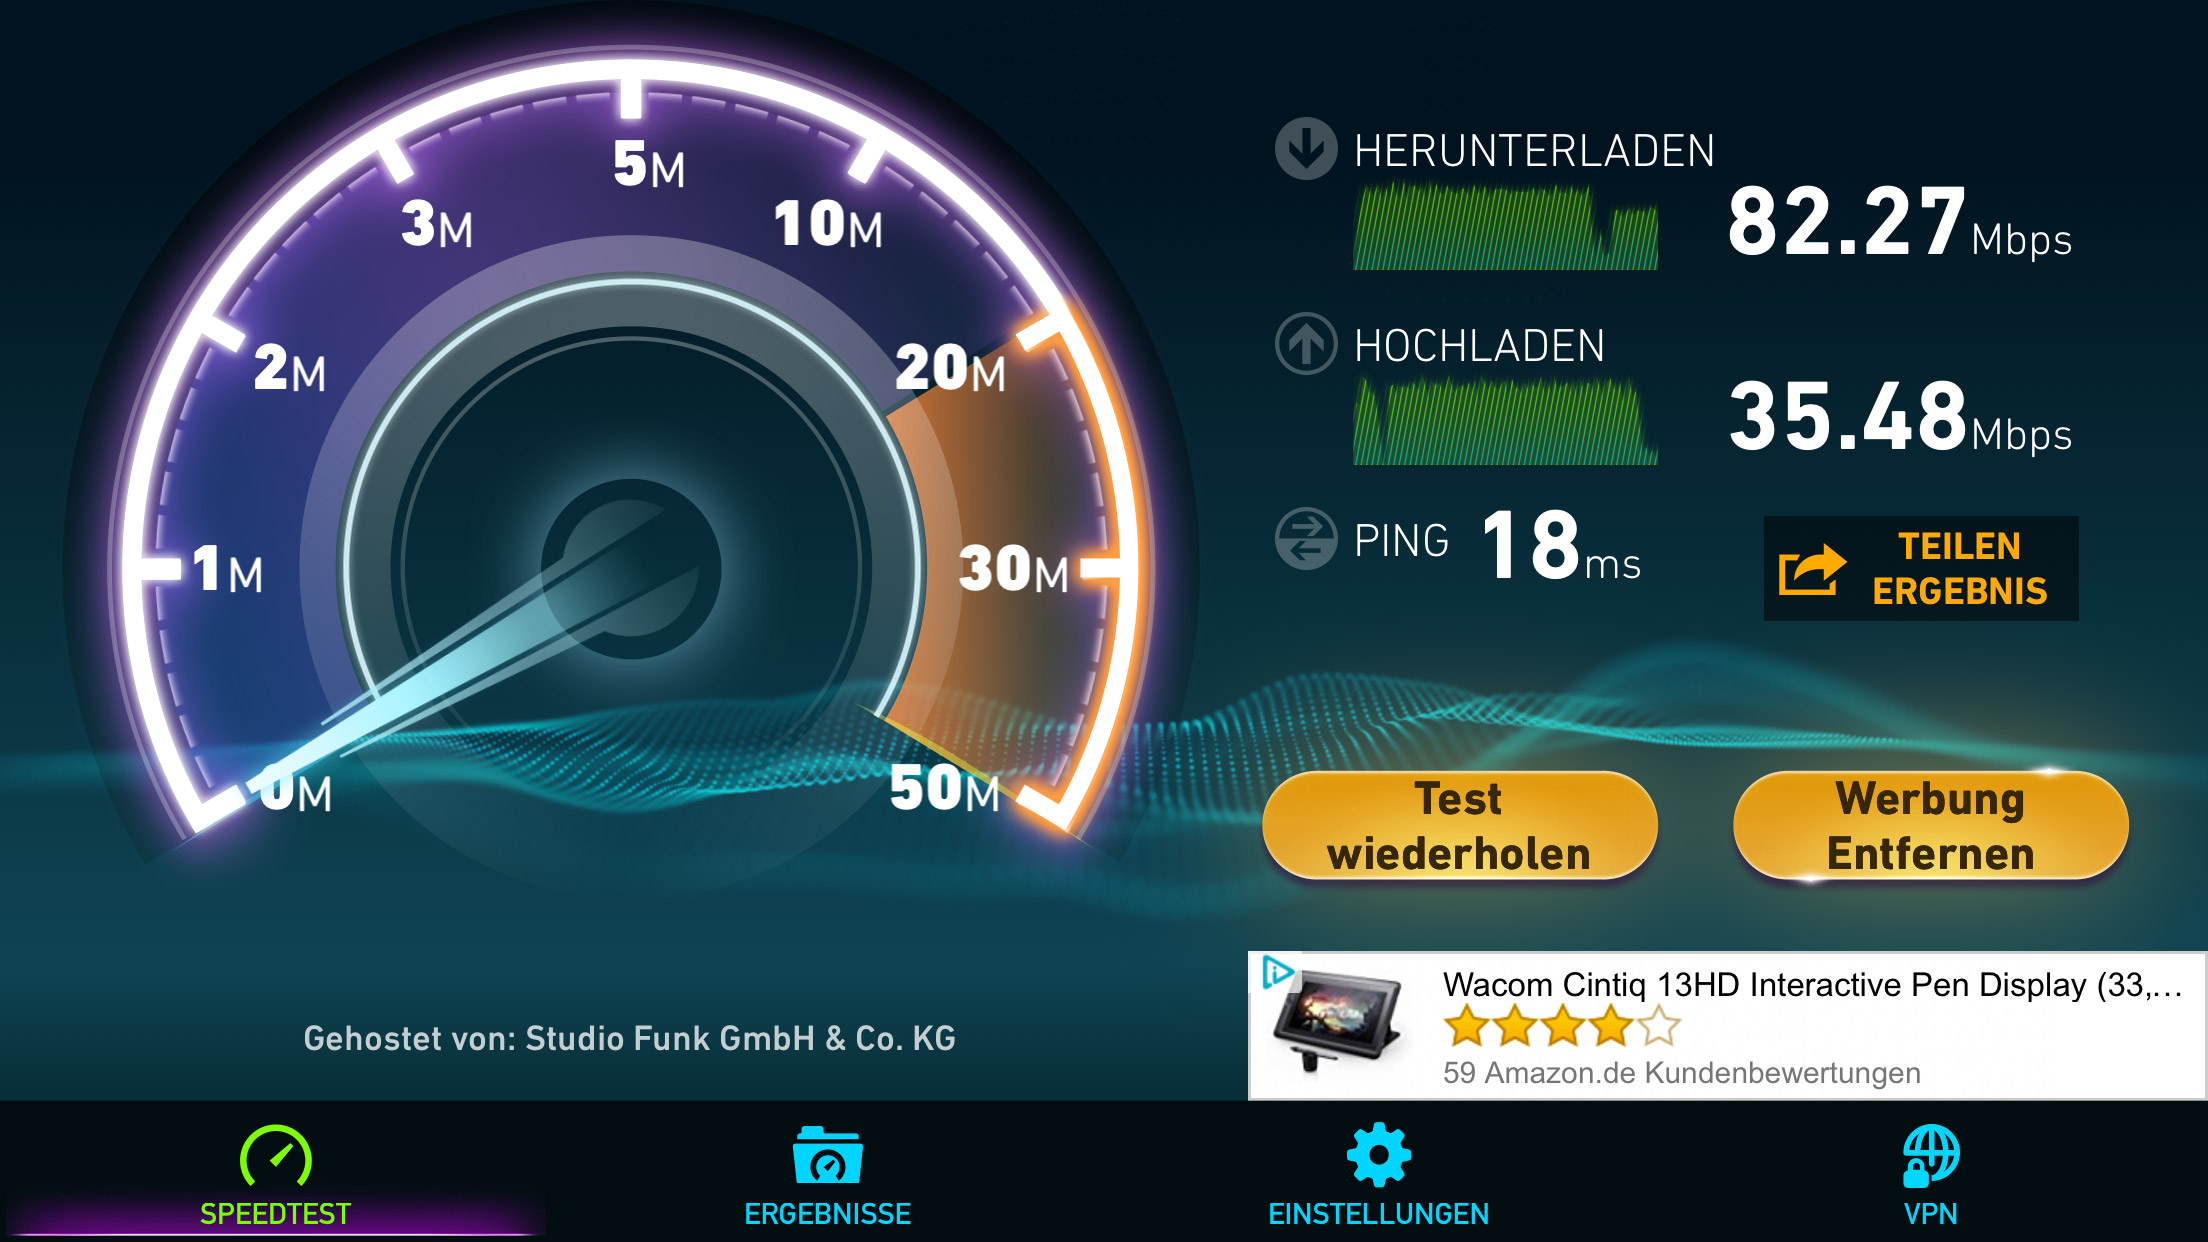 Купить быстрый интернет. Спидтест скорости интернета. Скрин скорости инета. Тест скорости. Измеритель скорости интернета.